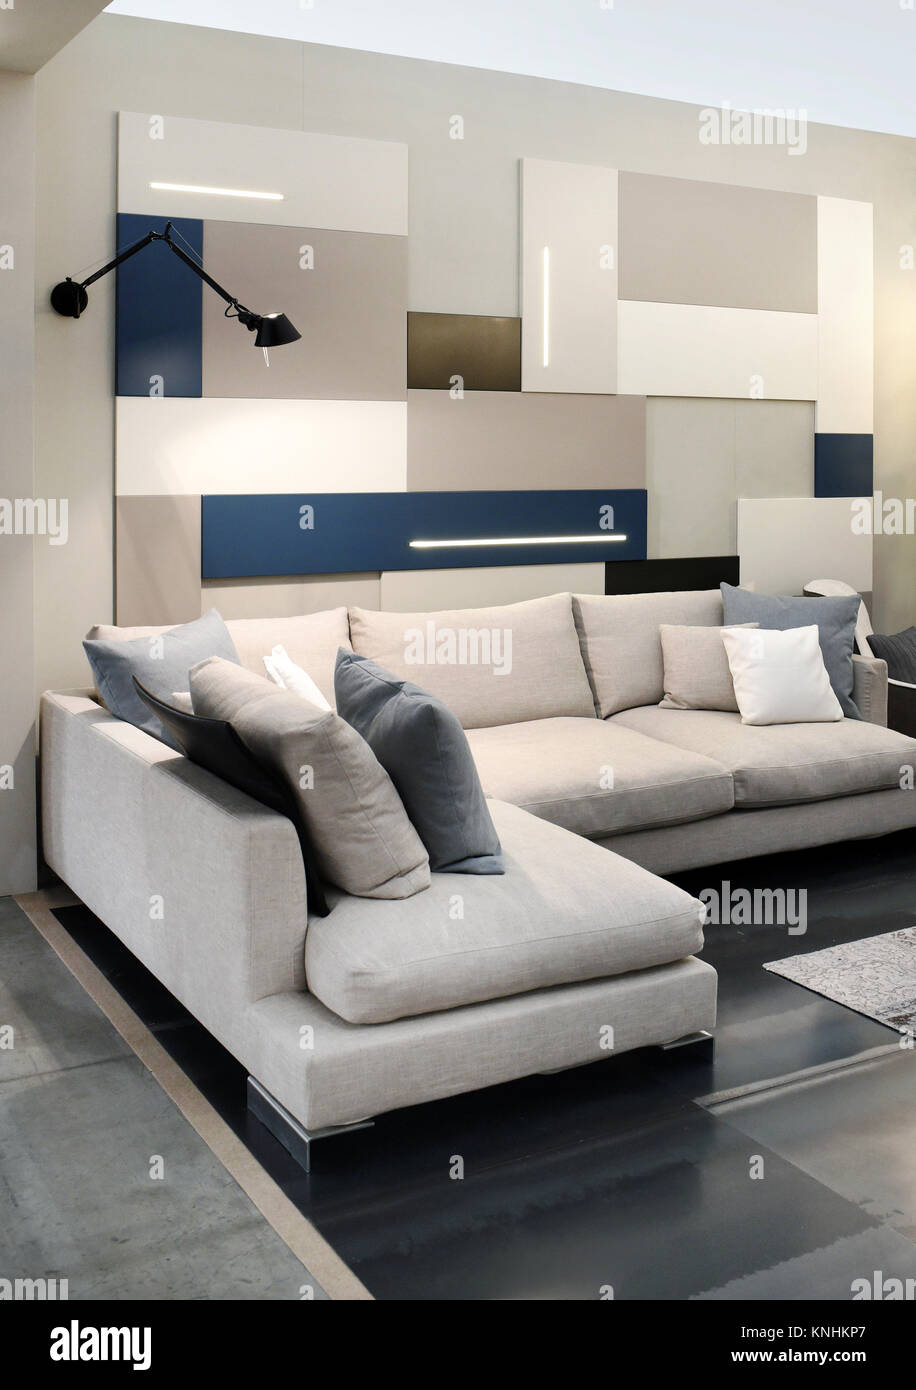 Wohnzimmer Einrichtung in neutralen Farben gehaltene Einrichtung mit Sofa in Braun- und Beigetönen gehalten und mit passenden Kissen Stockfoto